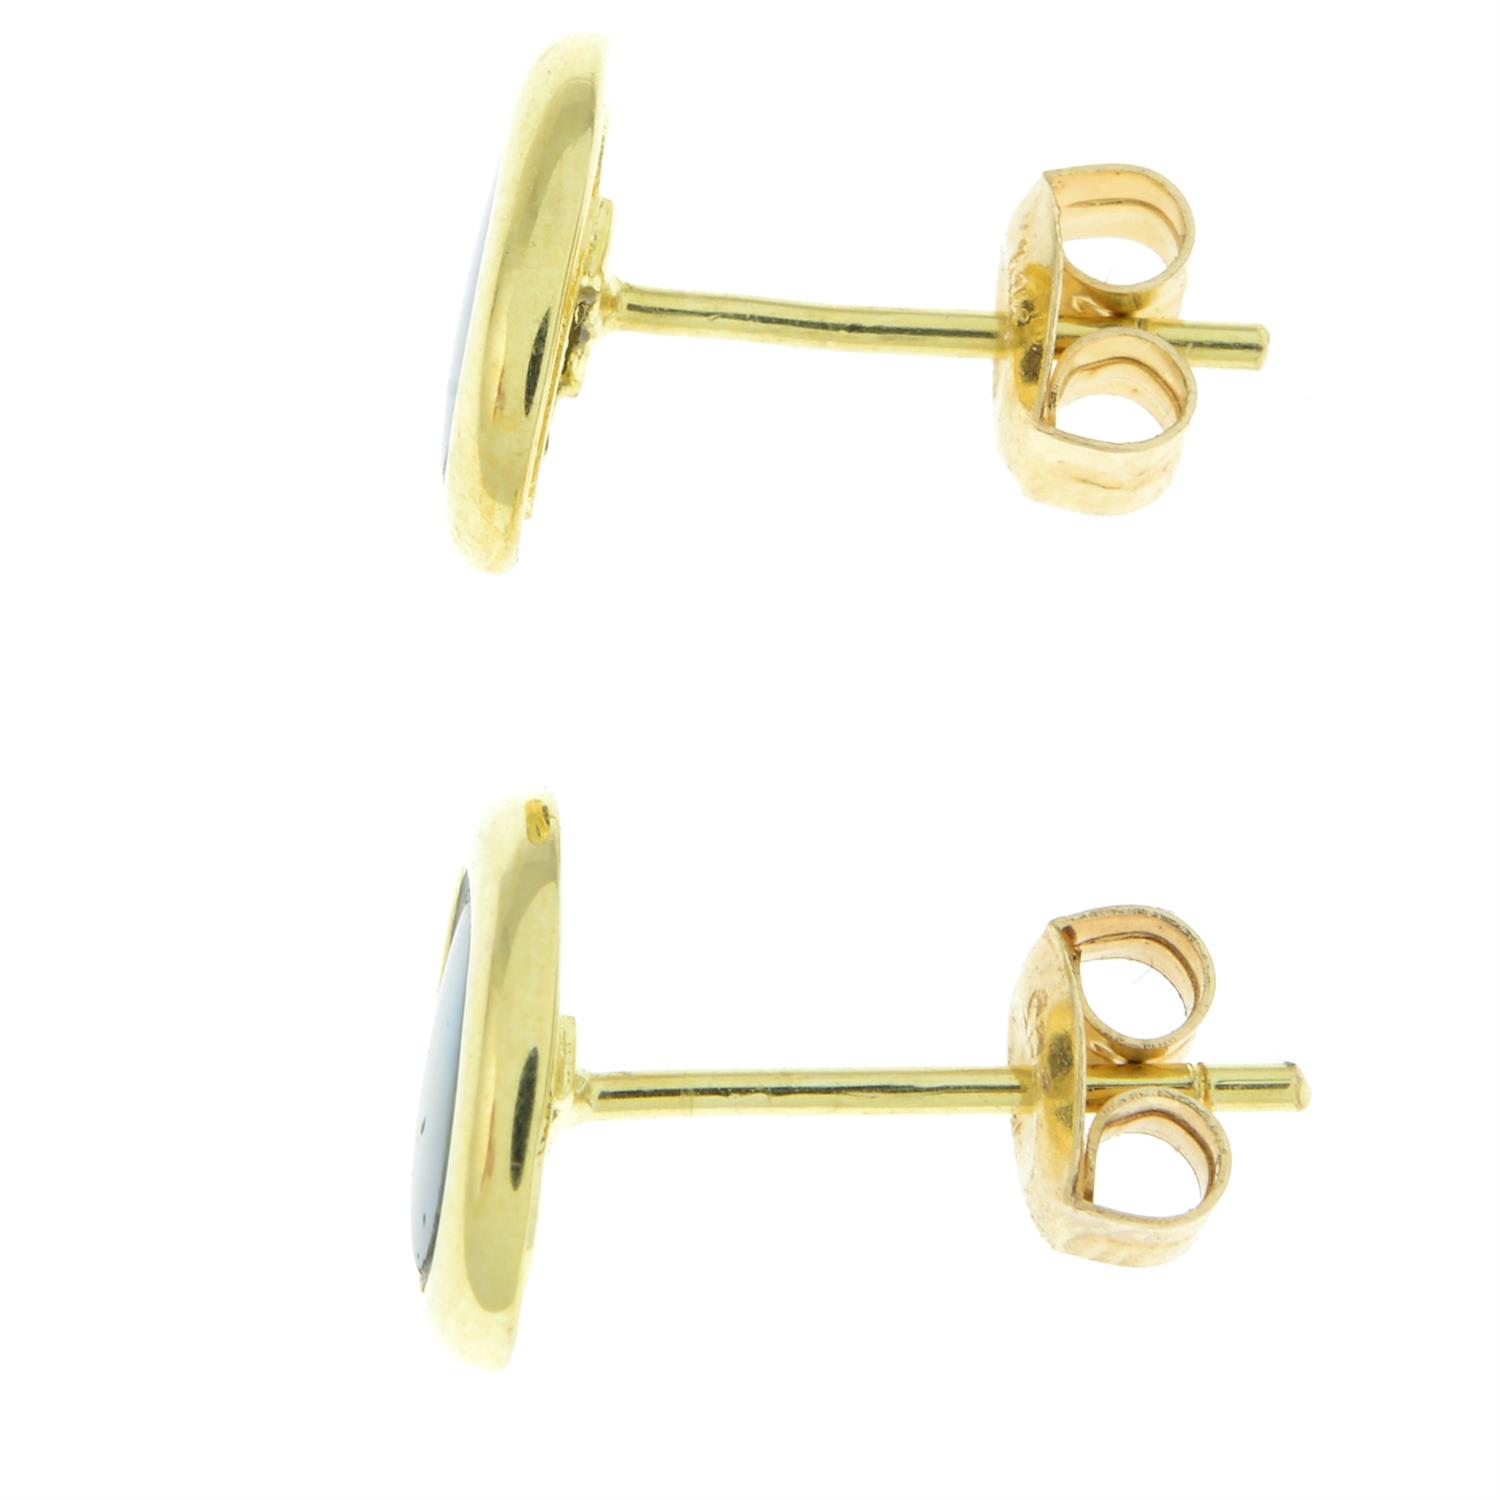 Opal doublet stud earrings - Image 2 of 2